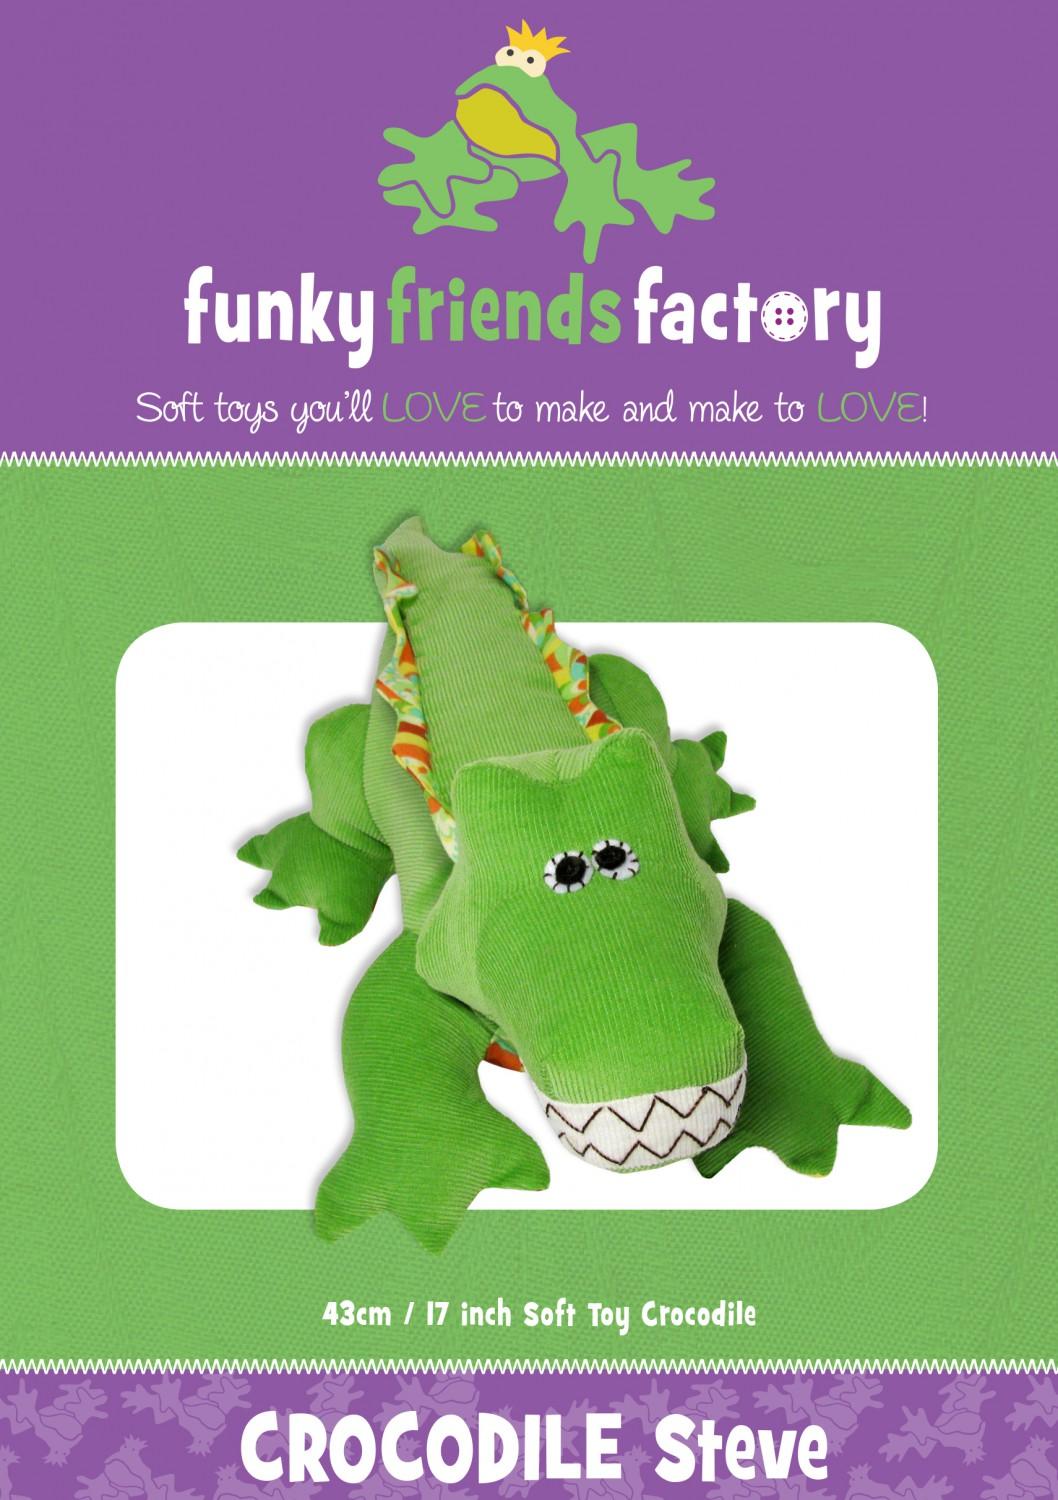 Crocodile Steve  Funky Friends Factory